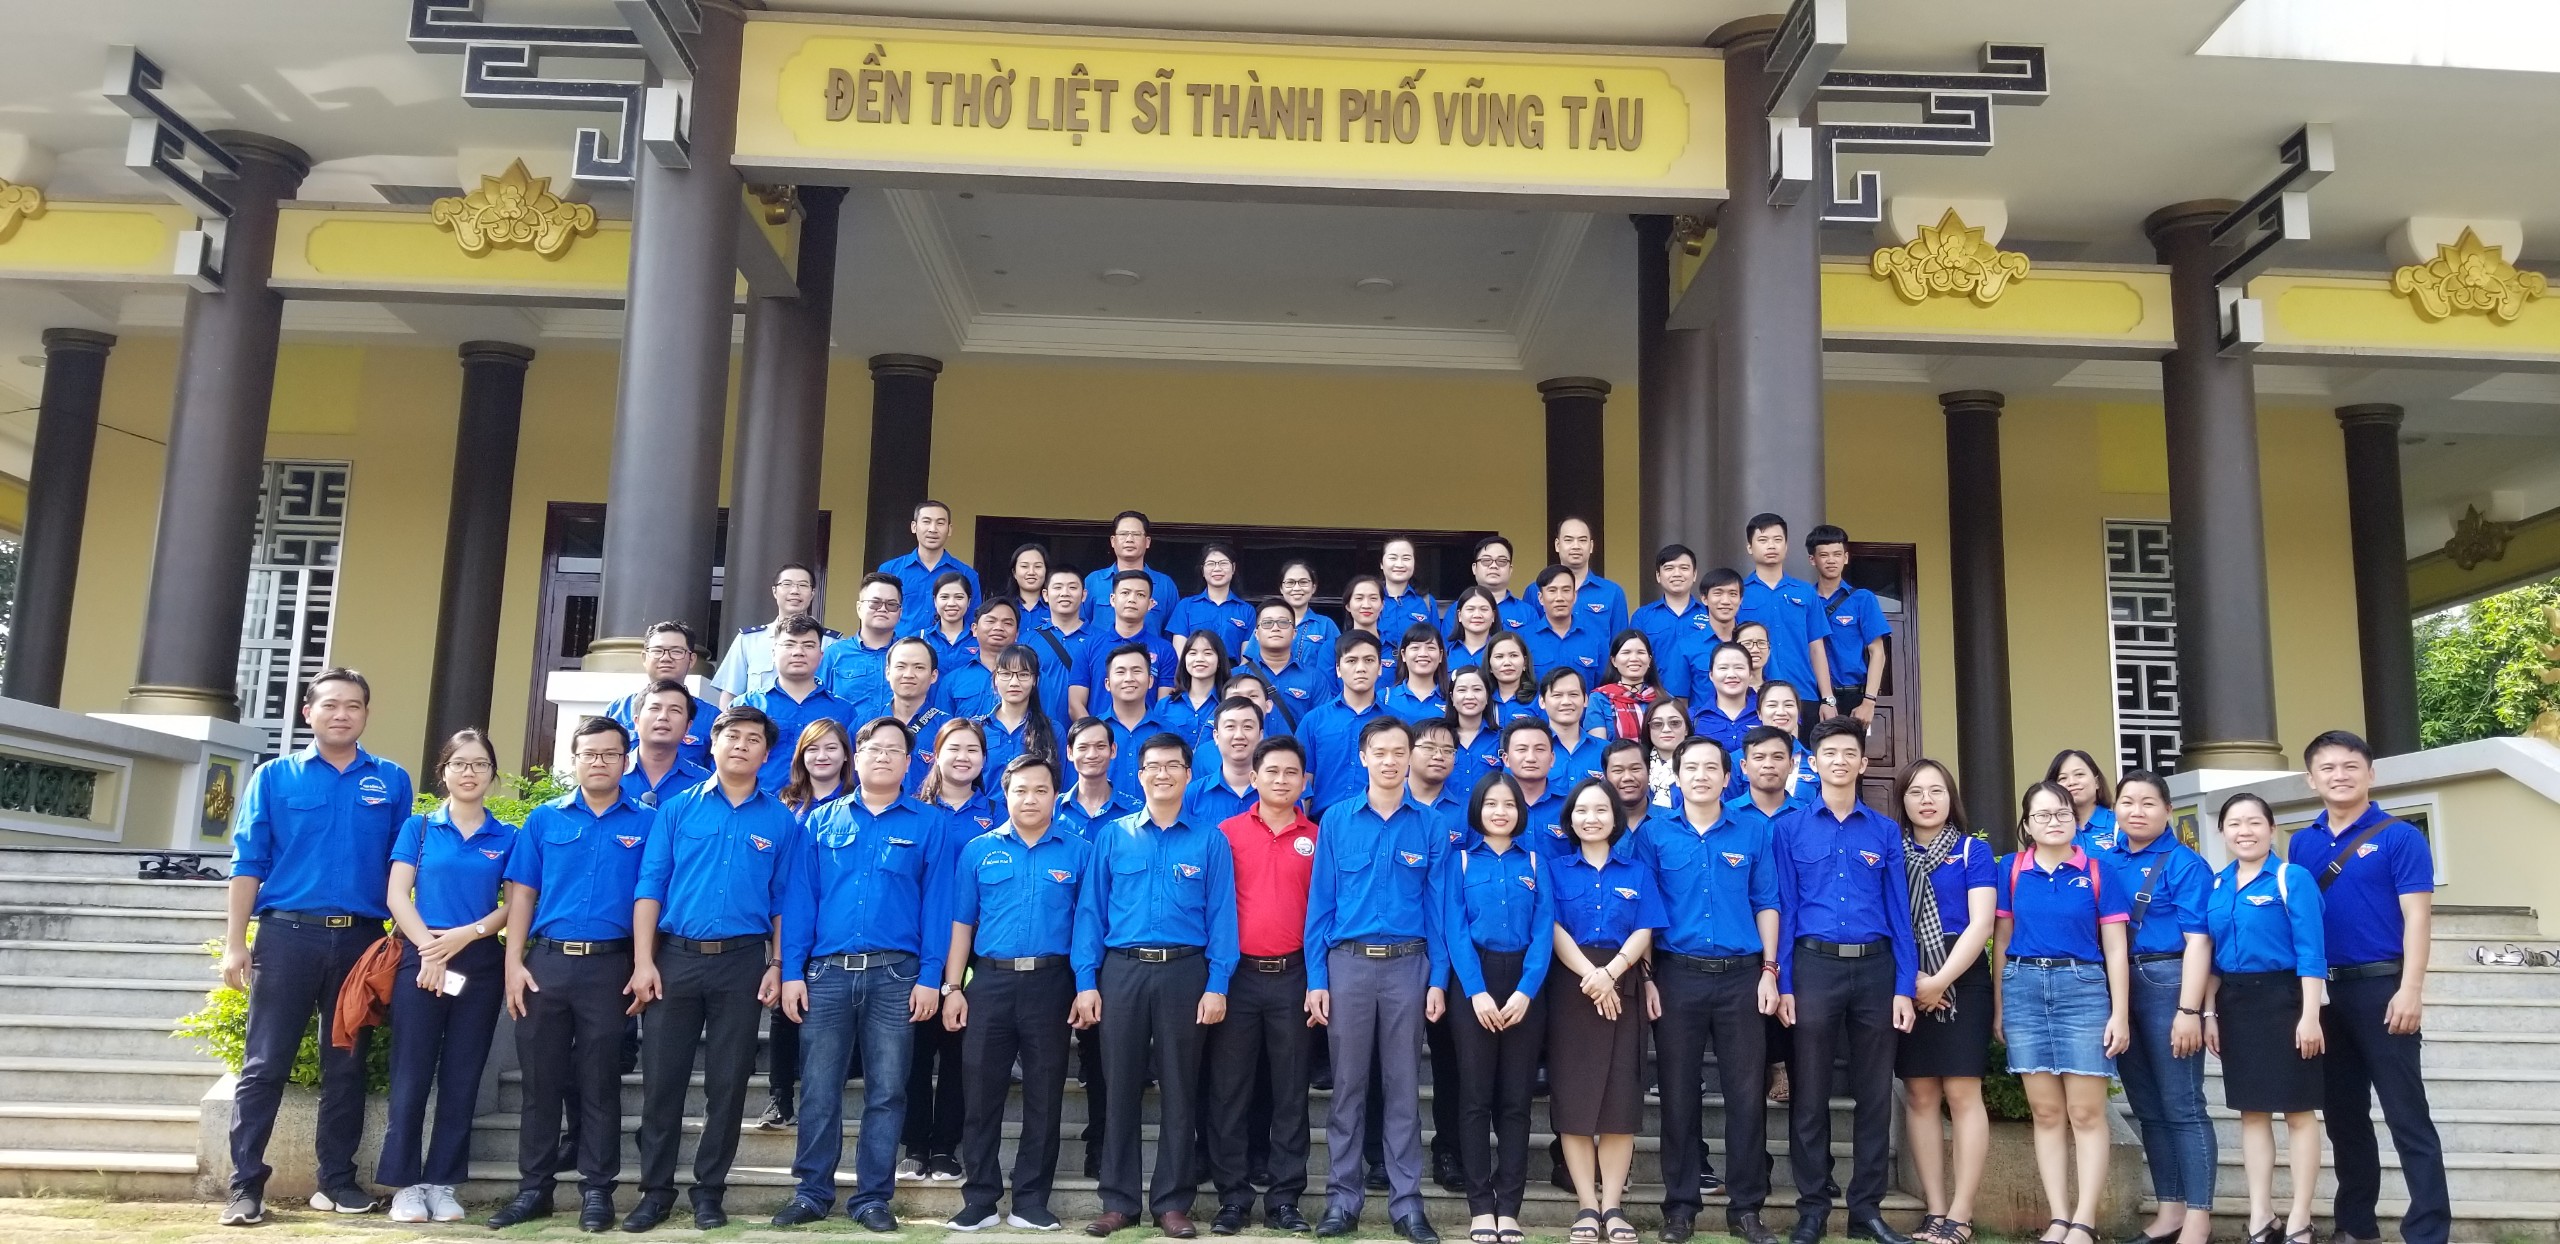 Đoàn đại biểu tham dự liên hoan chụp hình lưu niện tại Đền thờ Liệt sỹ thành phố Vũng Tàu.jpg